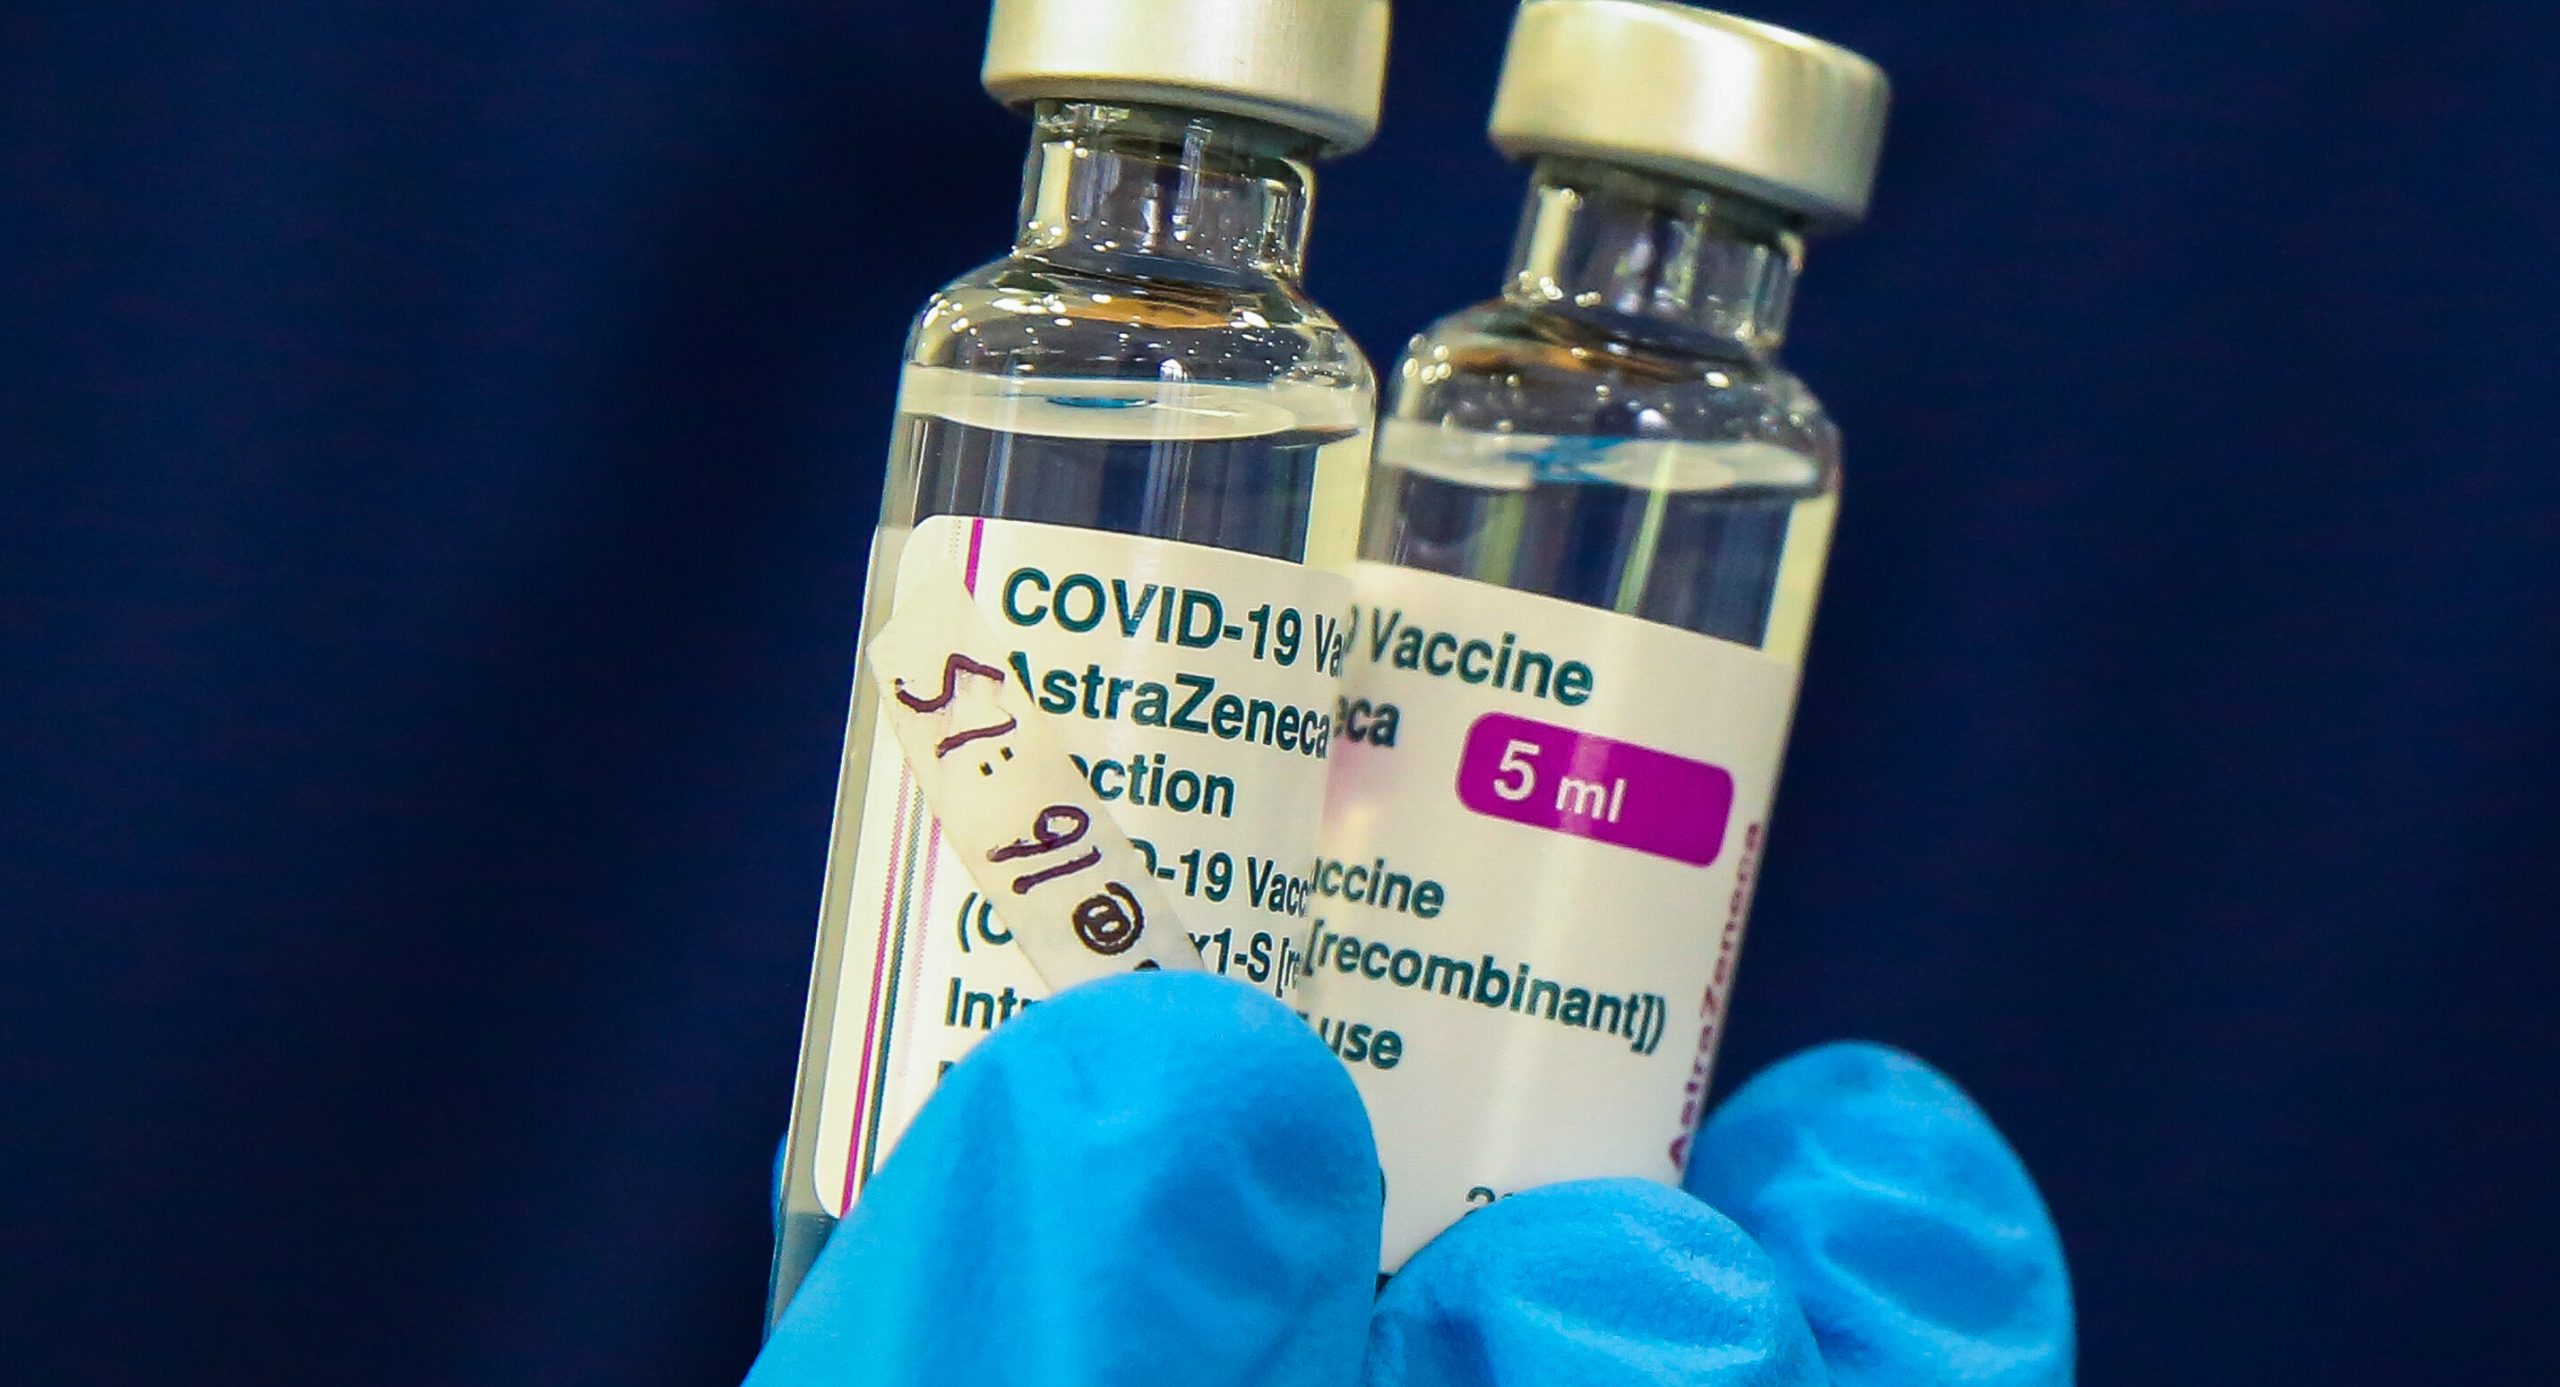 Medicii consideră că reacțiile adverse ale vaccinului AstraZeneca sunt prea rare pentru a justifica suspendarea utilizării serului